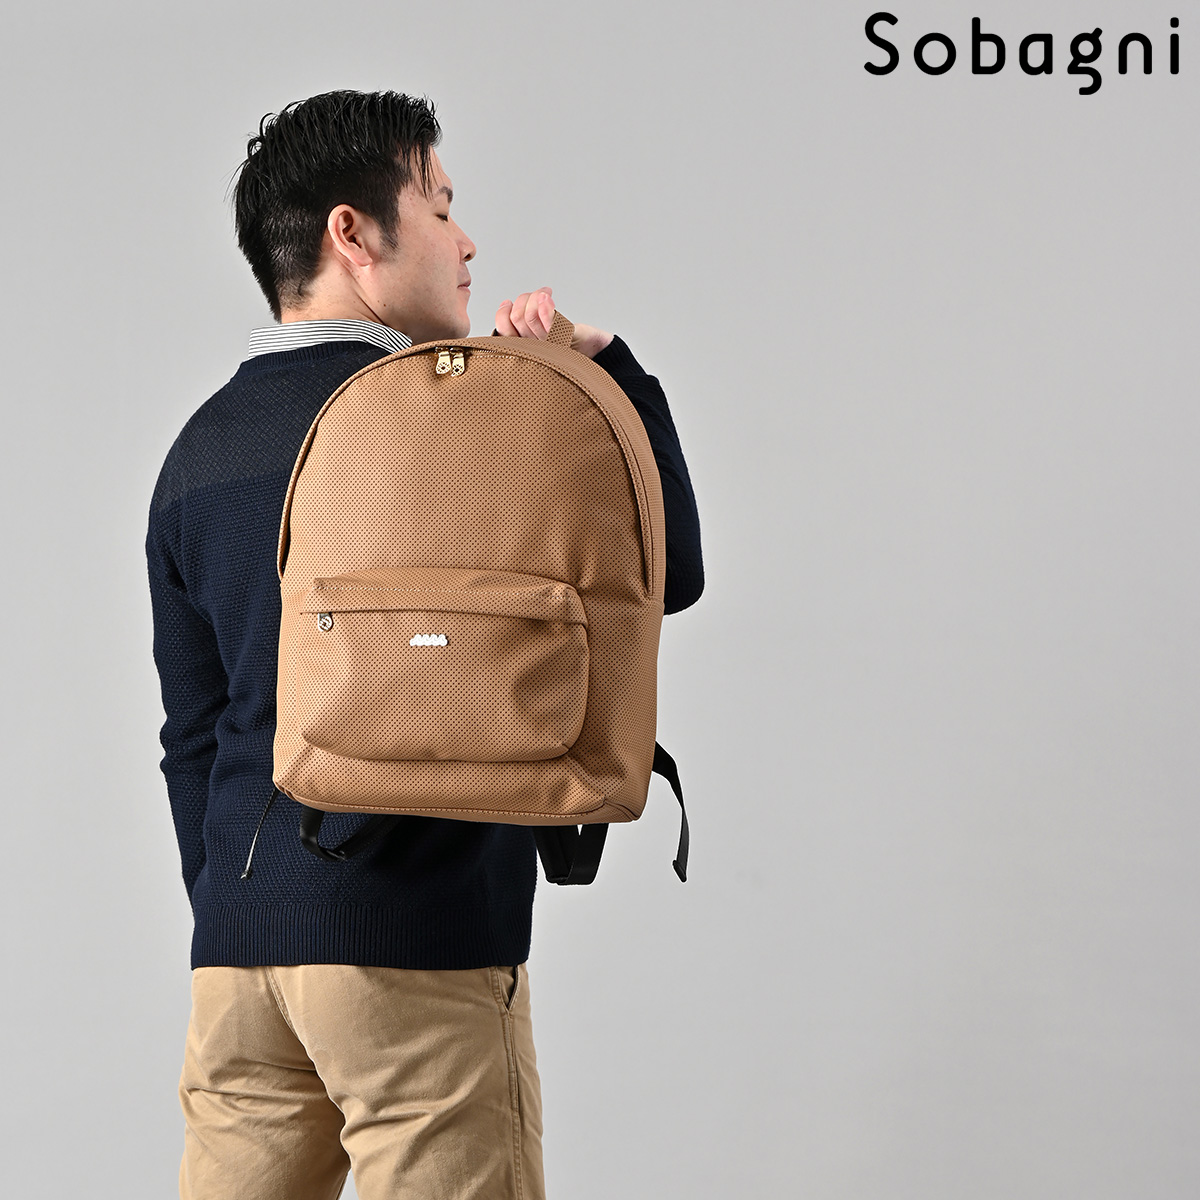 sobagni.jp/images/detailed/9/muta_backpack0201_12....